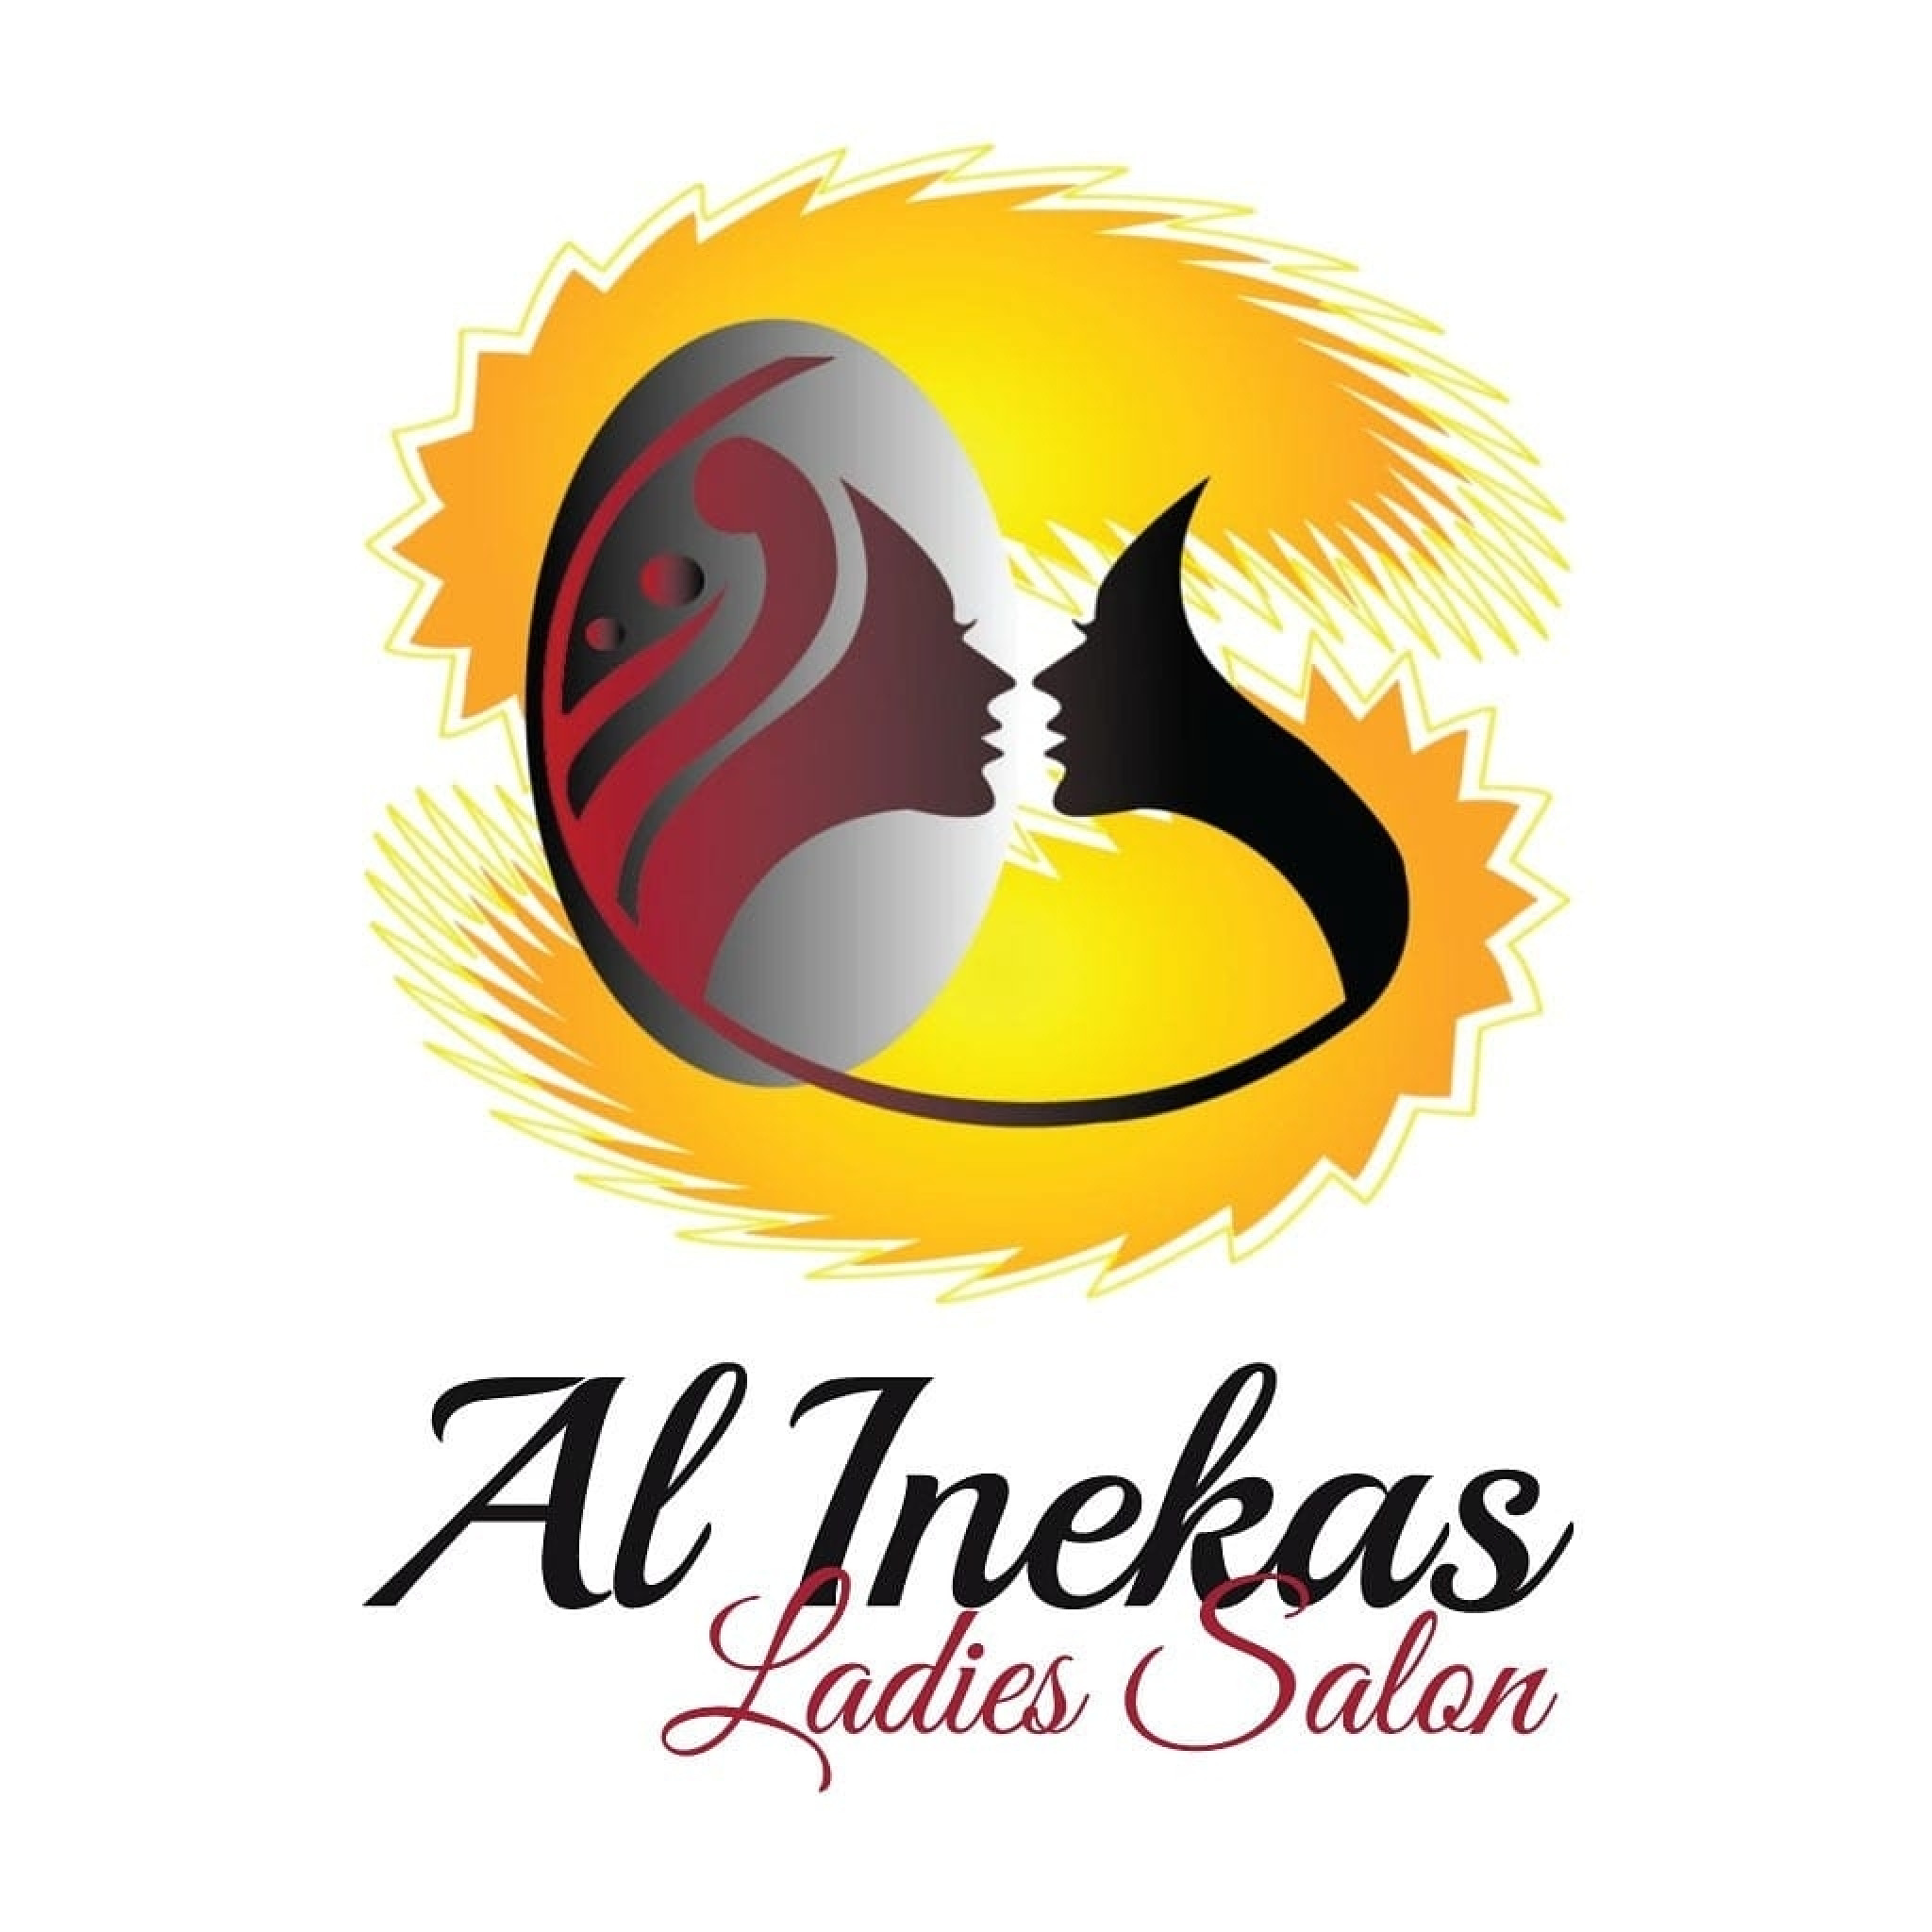 Al Inekas Ladies Salon